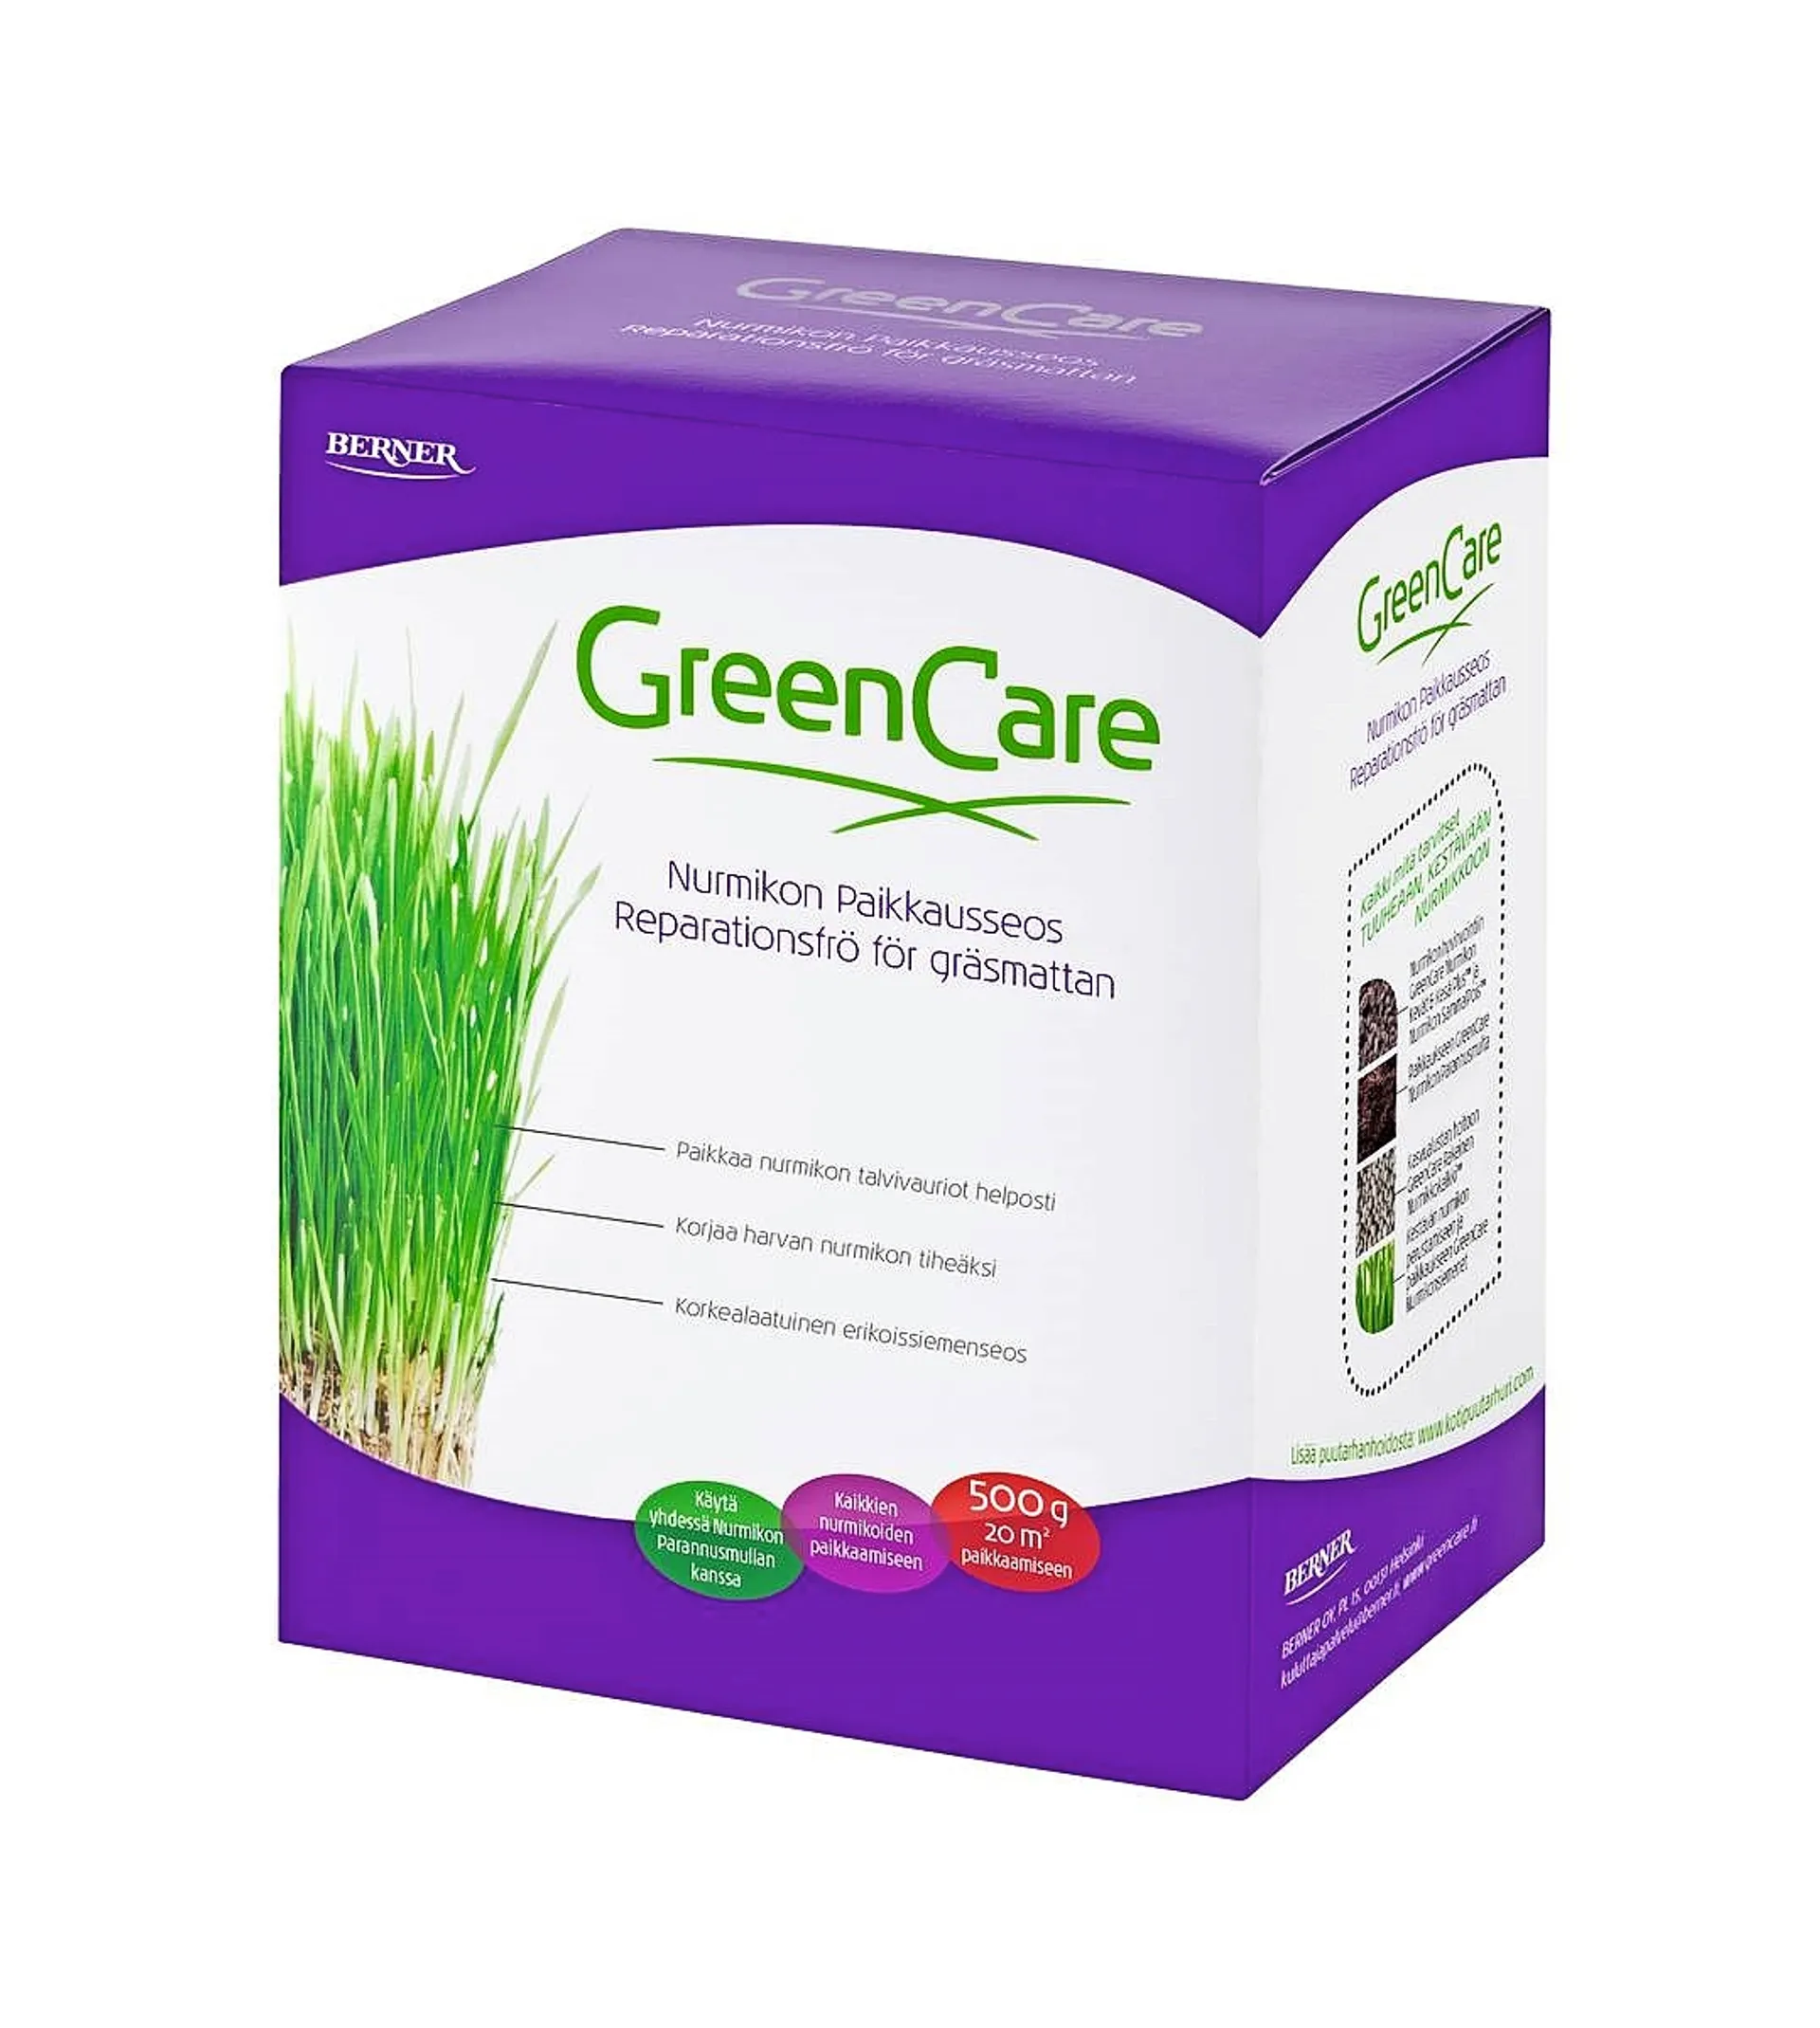 GreenCare nurmikon paikkausseos 500 g - 1